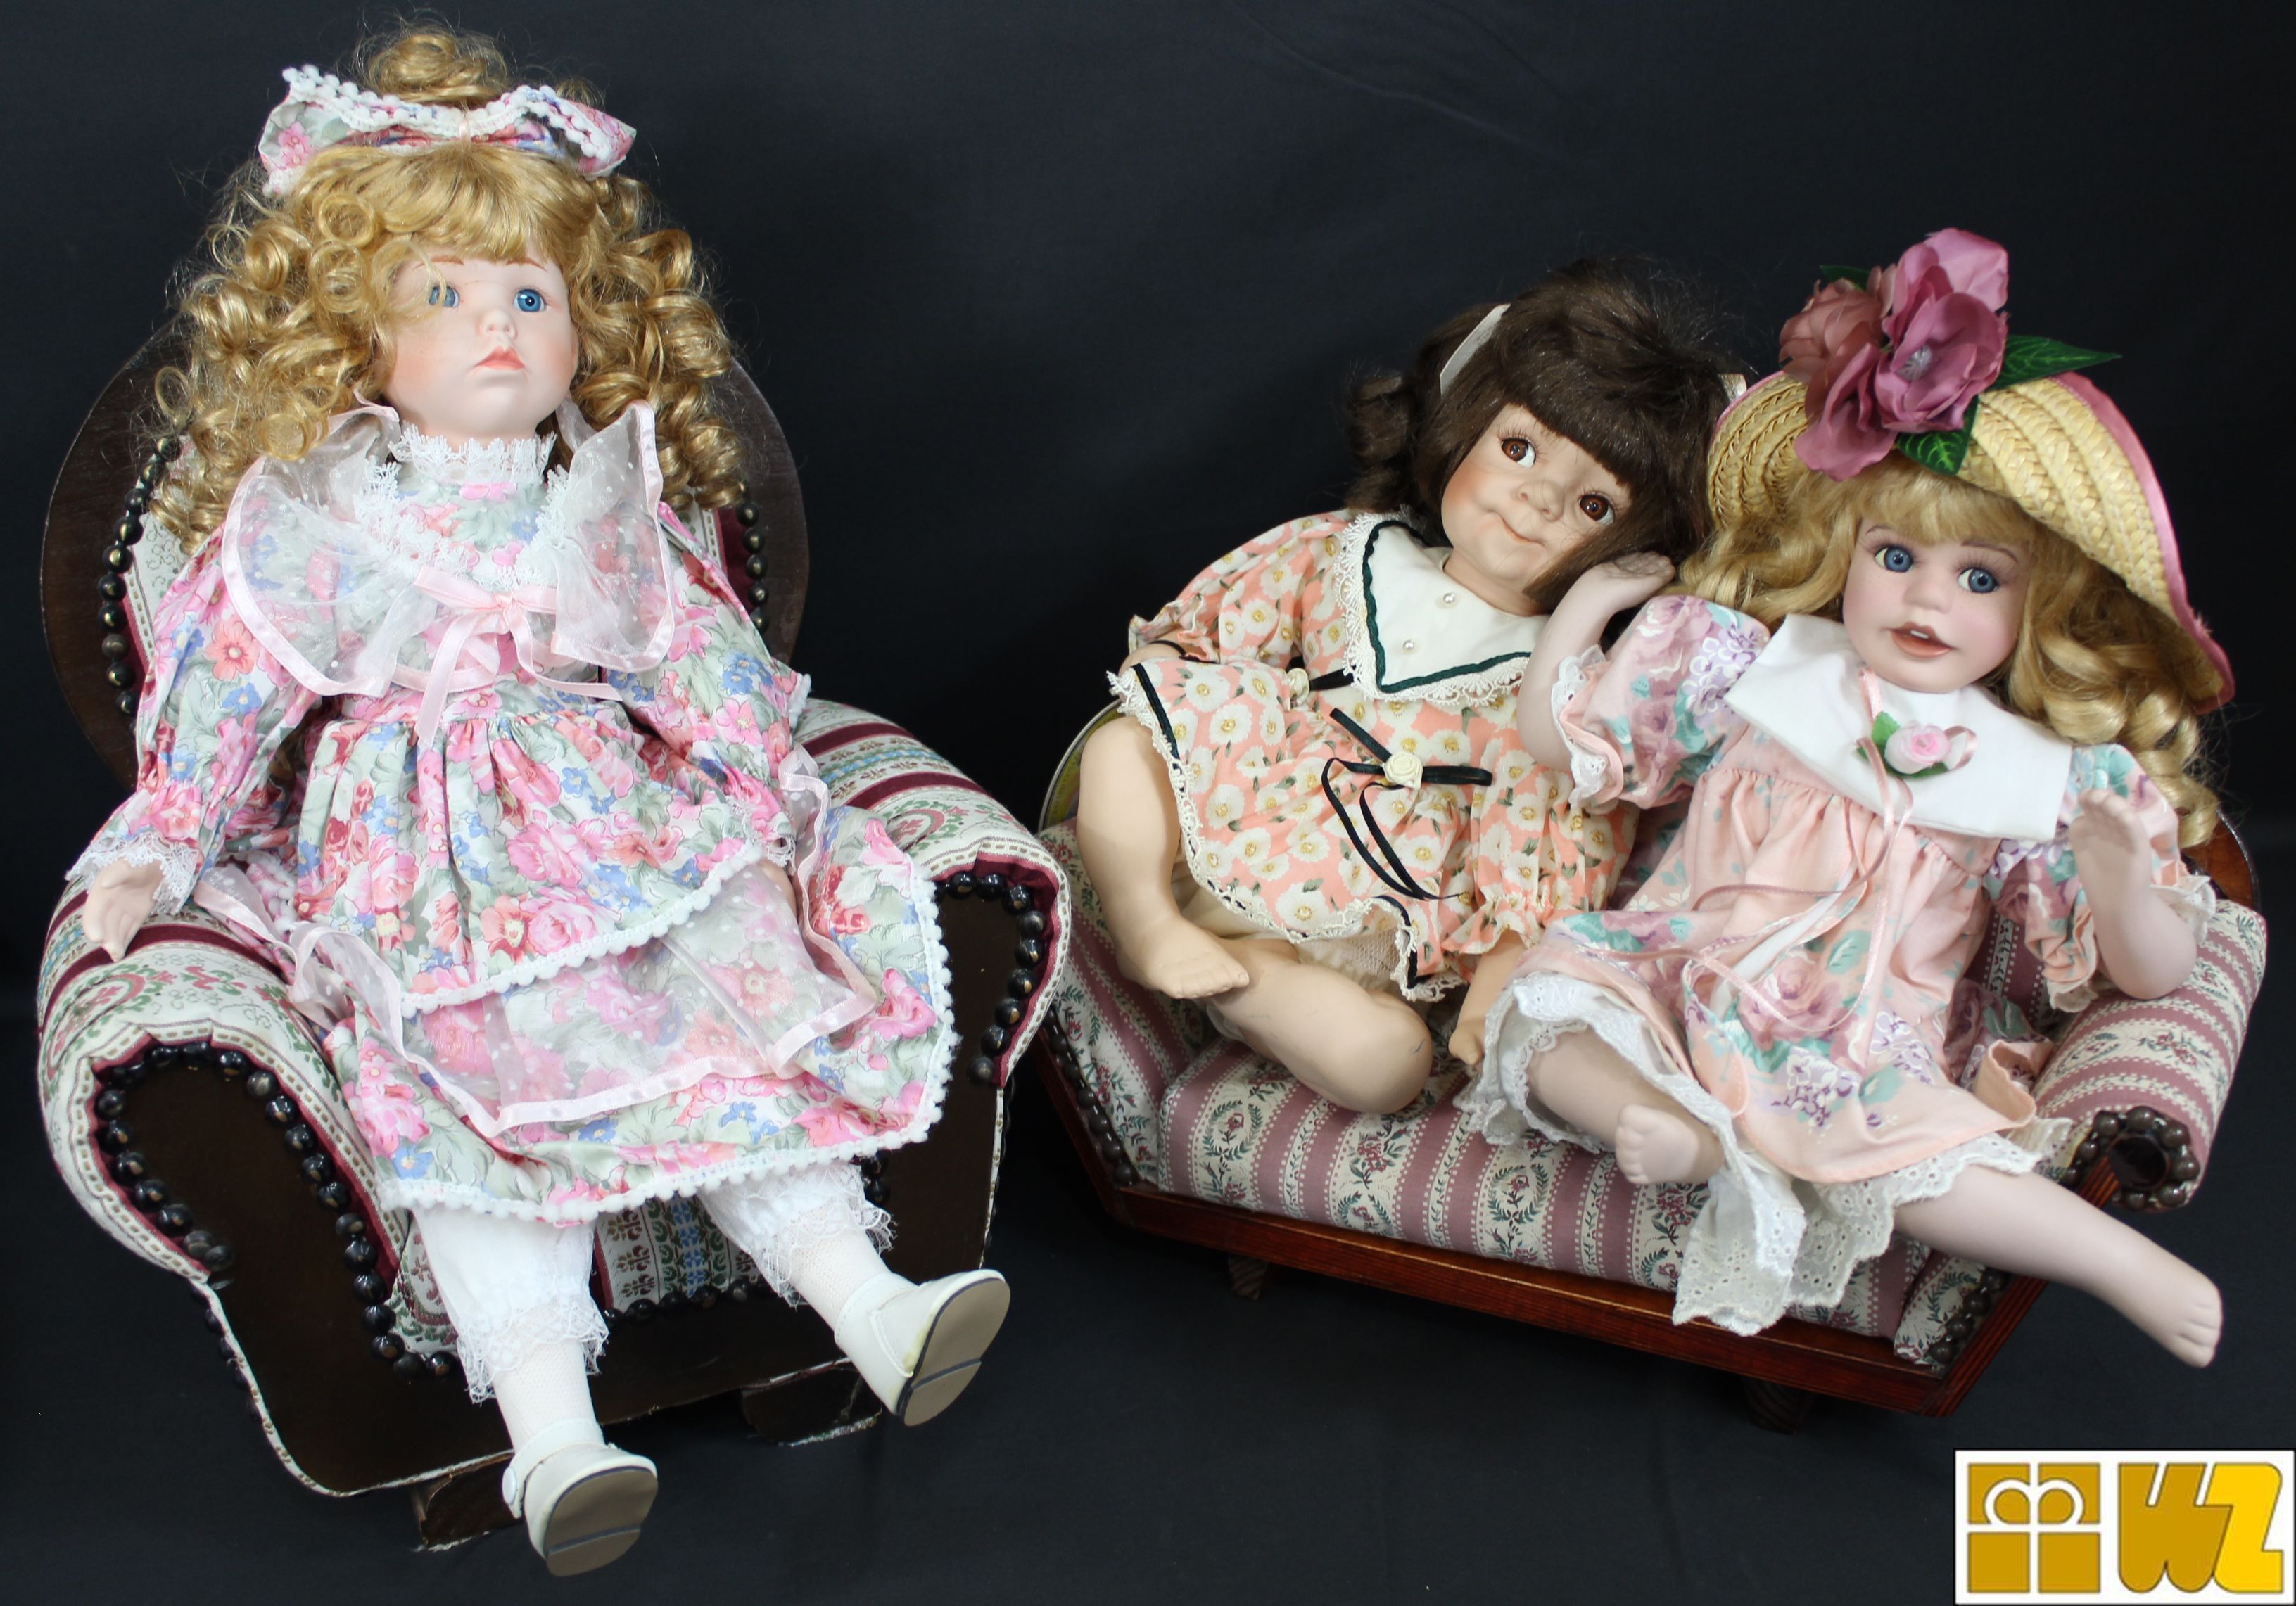 Sally's Dolls - Sammlerpuppenset - 3 verschiedene Porzellanpuppen mit Möbeln